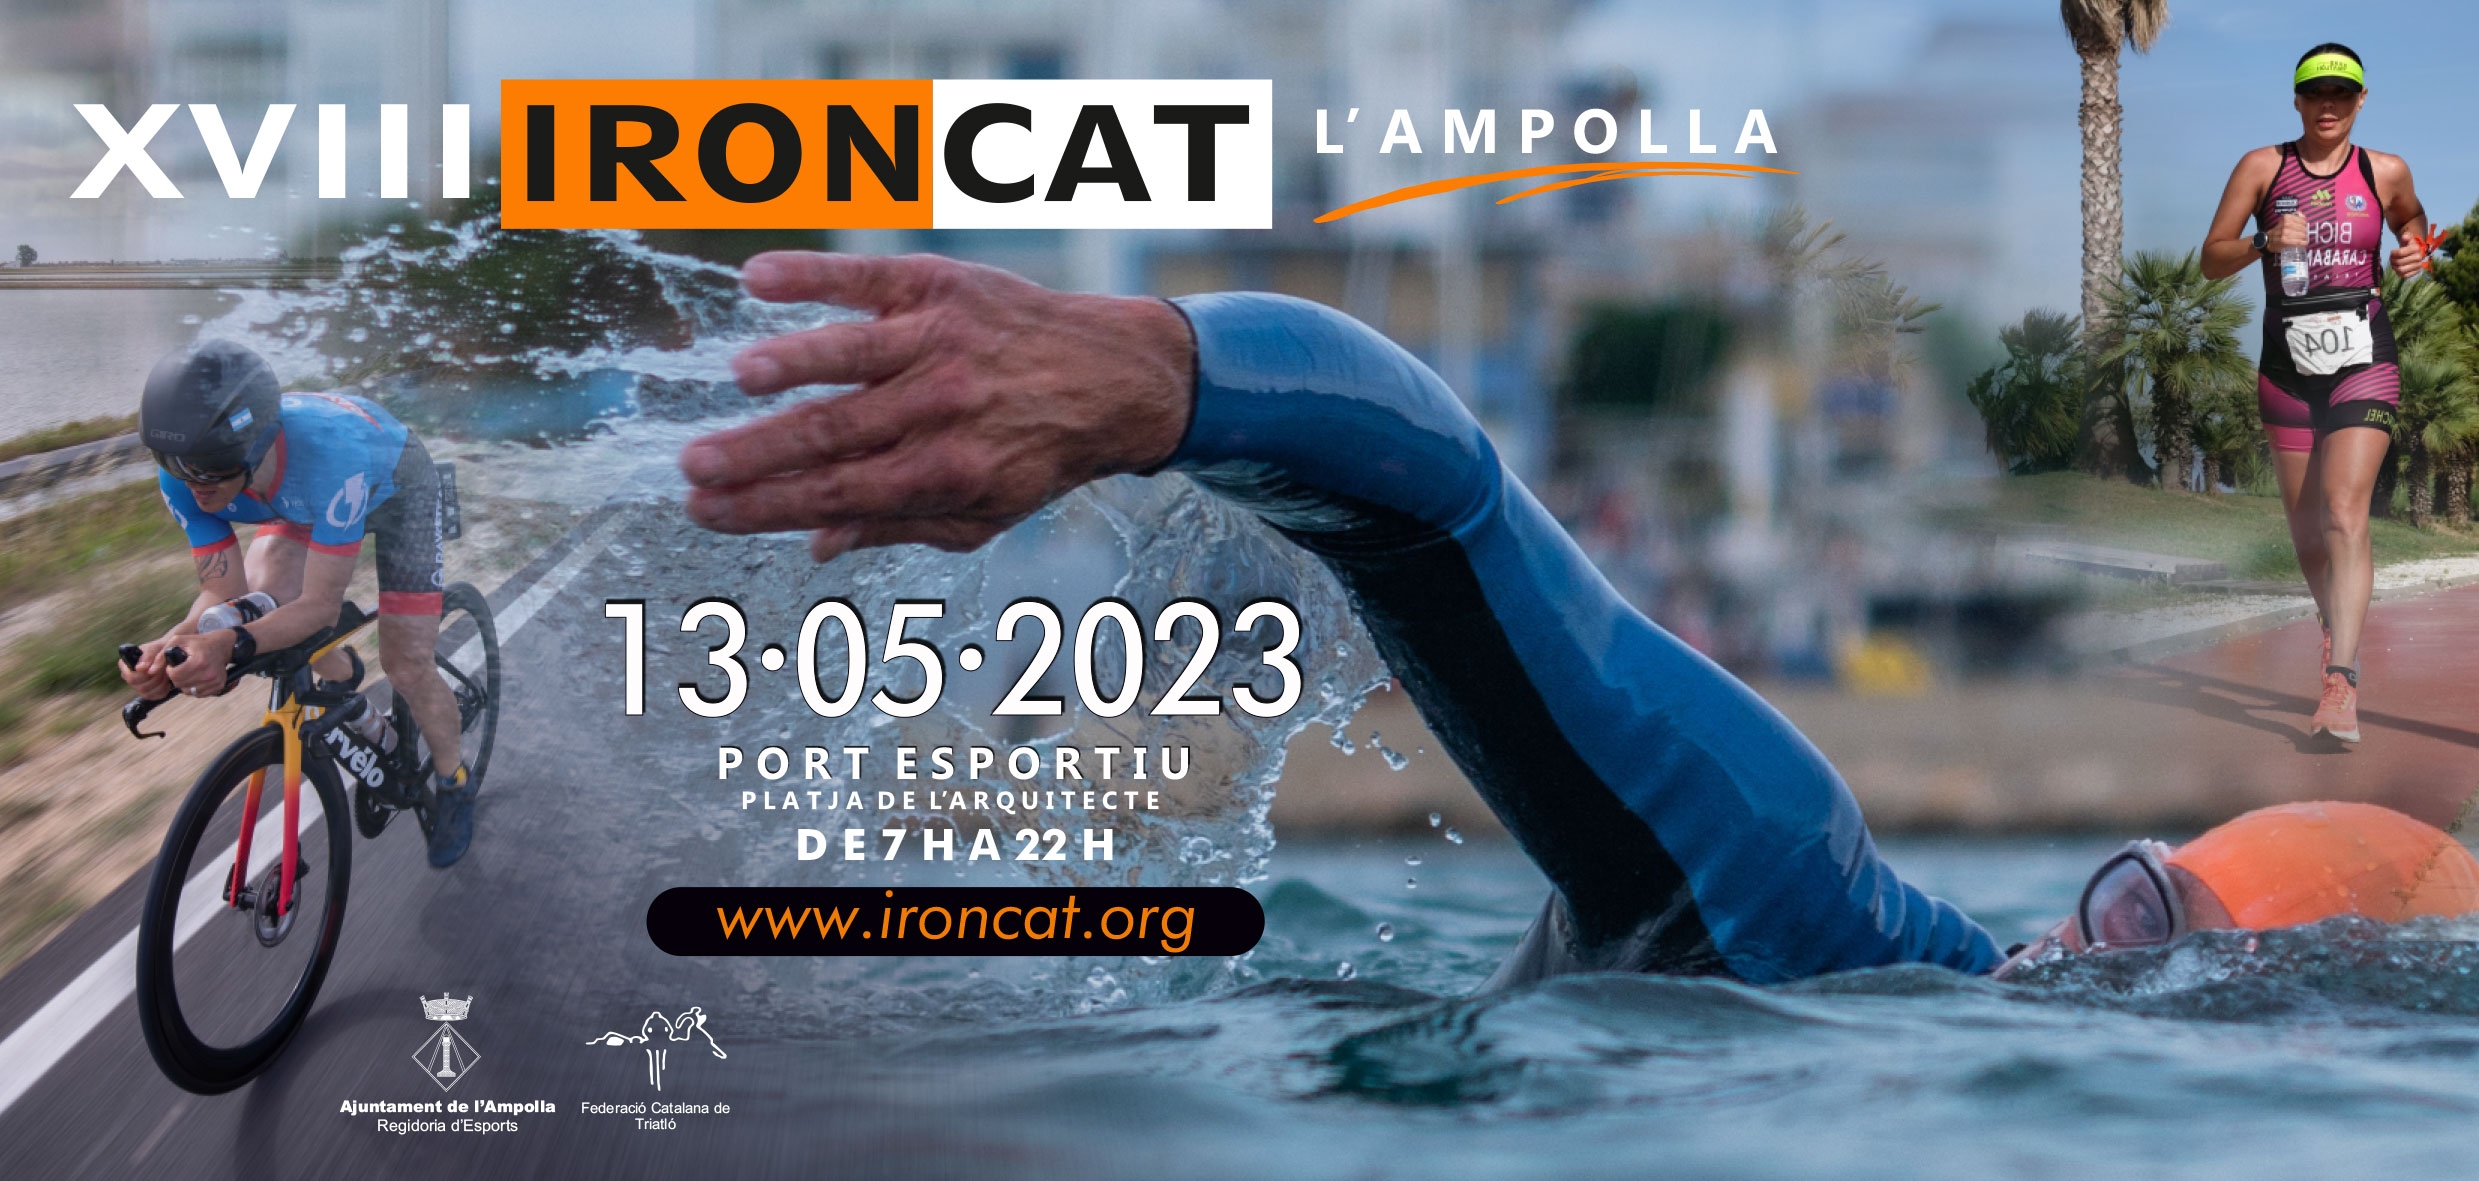 Lavandería a monedas En marcha Calendario IRONCAT-l'Ampolla - Un Triatlón de larga distancia para todos